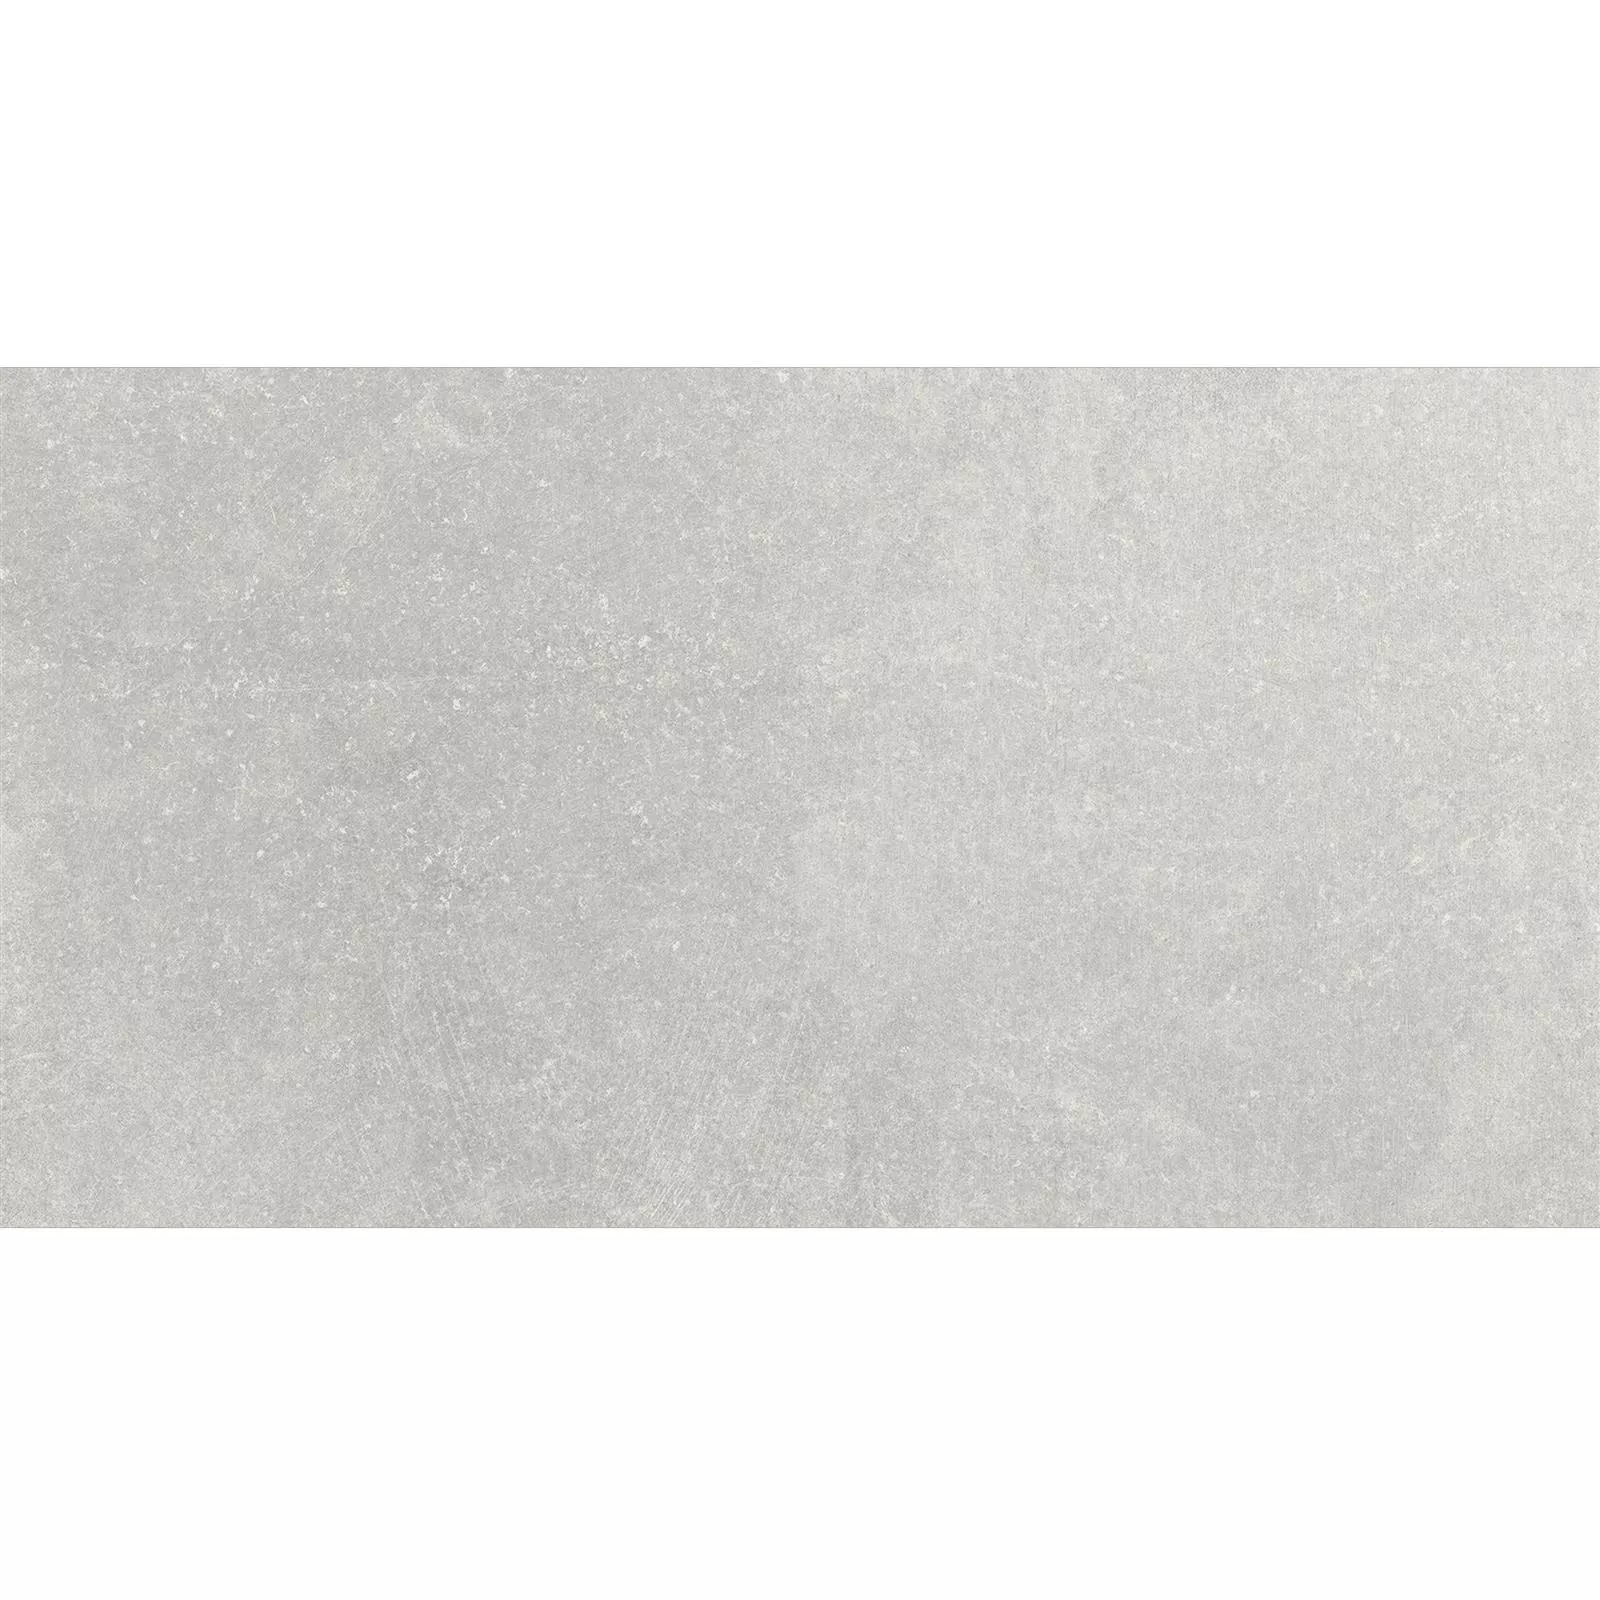 Πλακάκια Δαπέδου Πέτρινη Όψη Horizon Γκρί 30x60cm